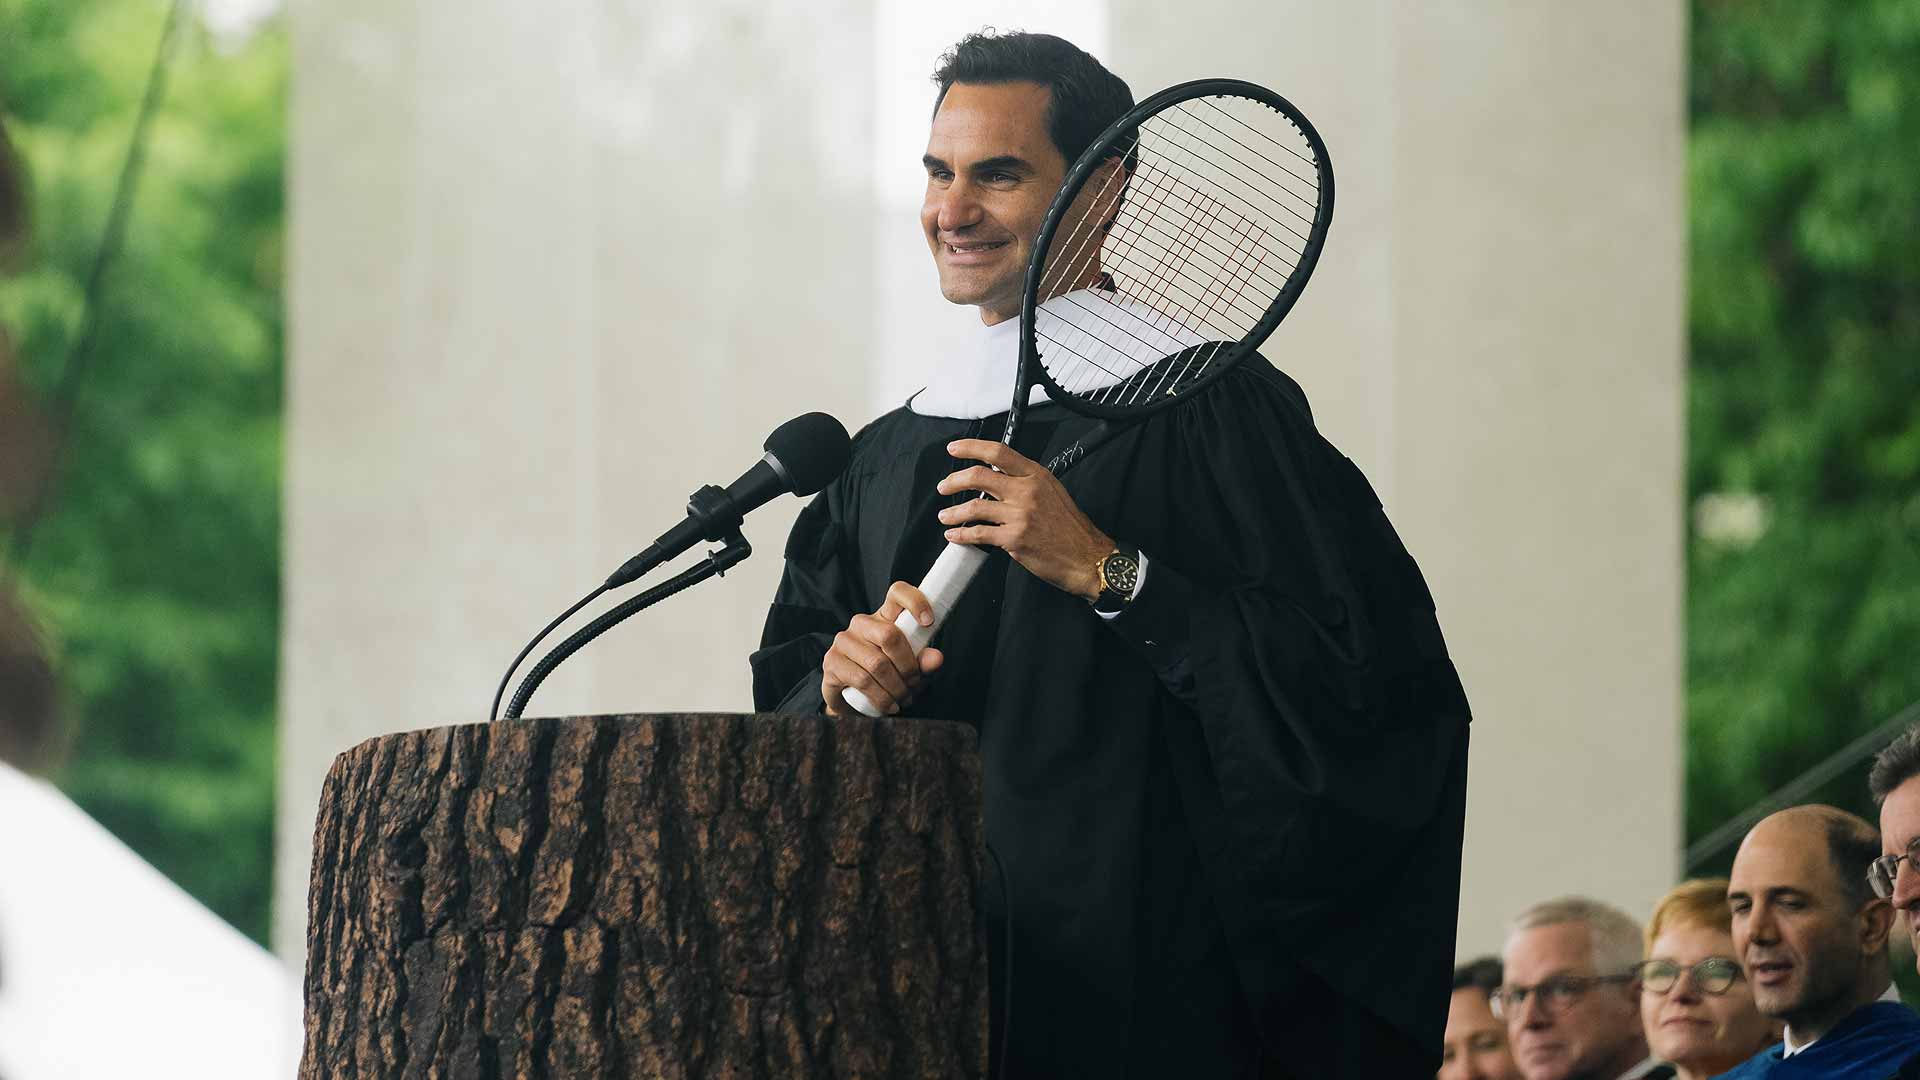 [VÍDEO] Federer faz discurso arrepiante em formatura de uma universidade nos EUA